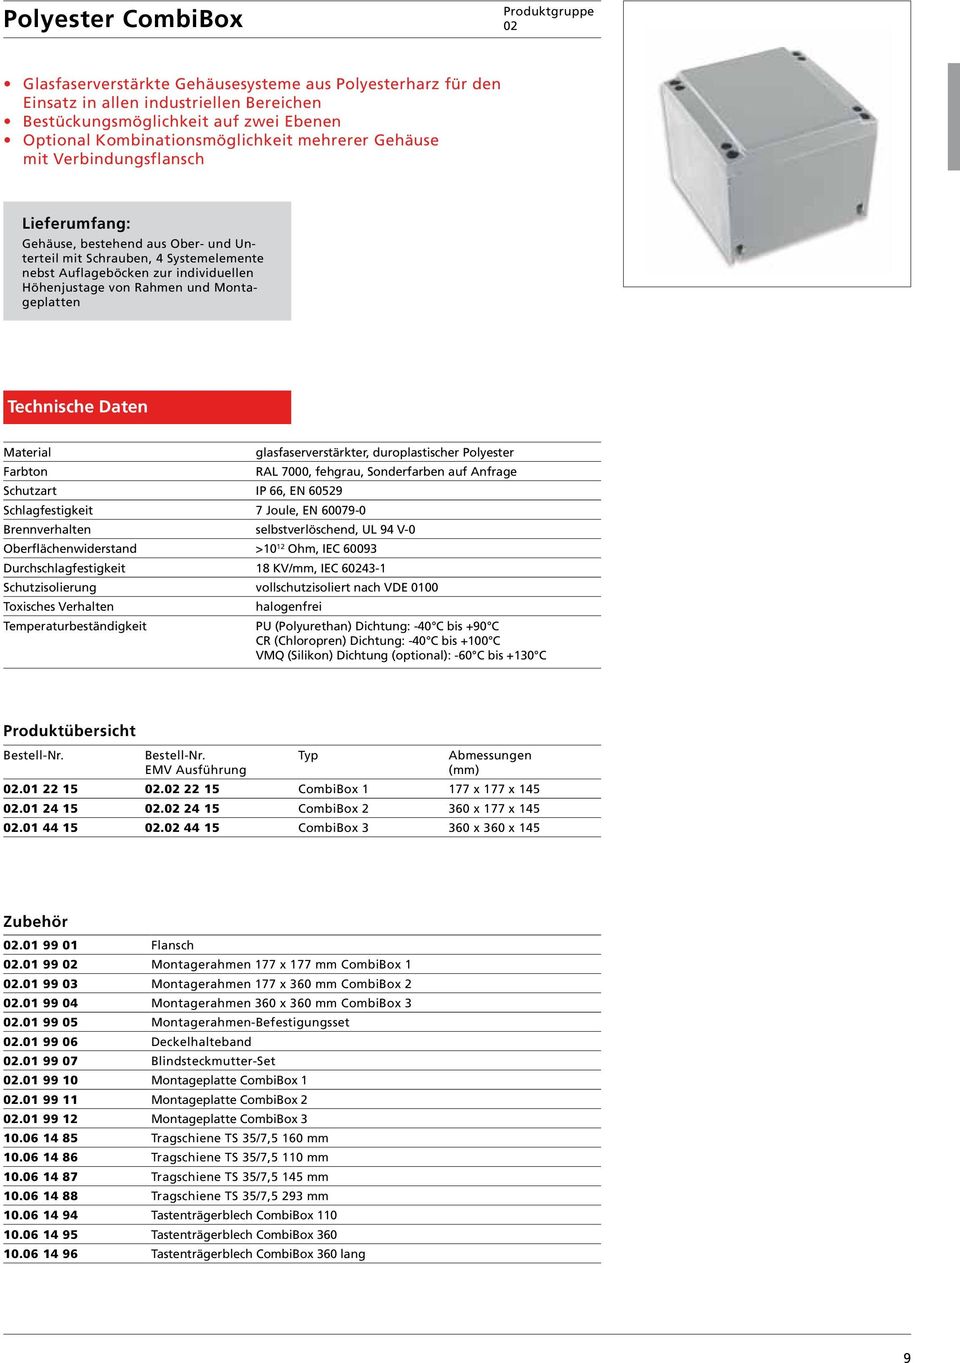 Montageplatten Material glasfaserverstärkter, duroplastischer Polyester Farbton RAL 7000, fehgrau, Sonderfarben auf Anfrage Schutzart IP 66, EN 60529 Schlagfestigkeit 7 Joule, EN 60079-0